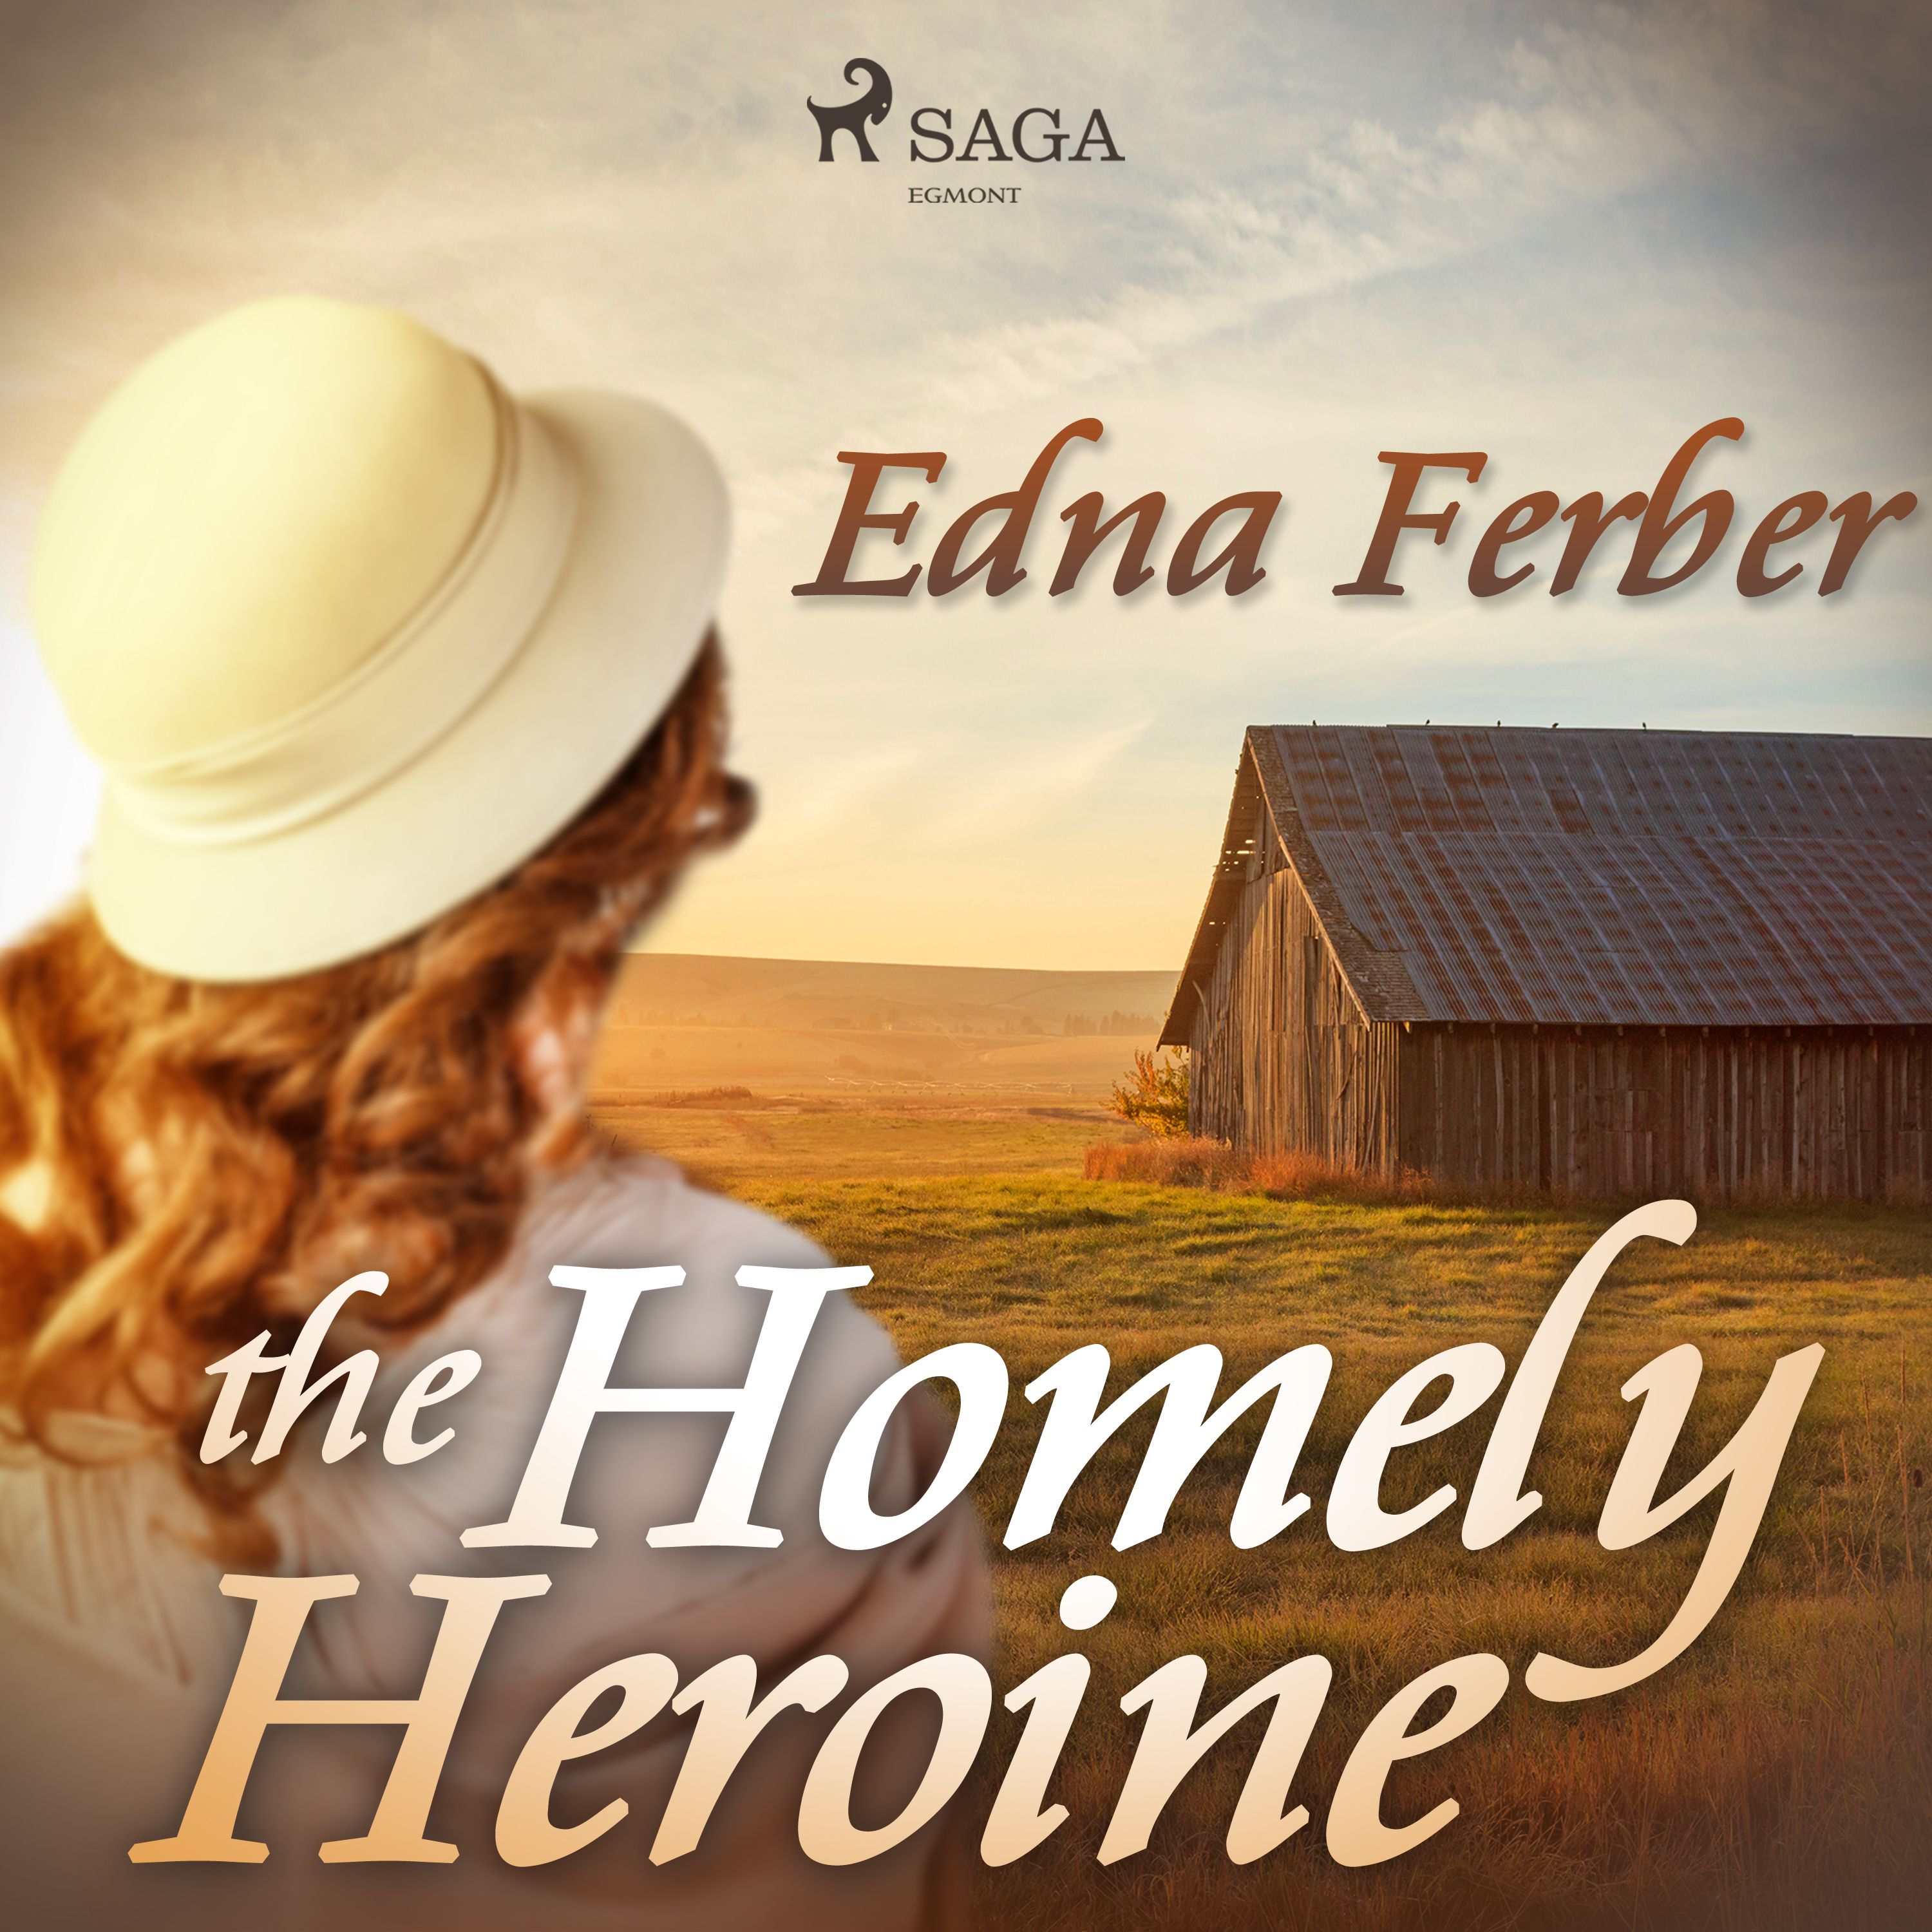 The Homely Heroine, ljudbok av Edna Ferber